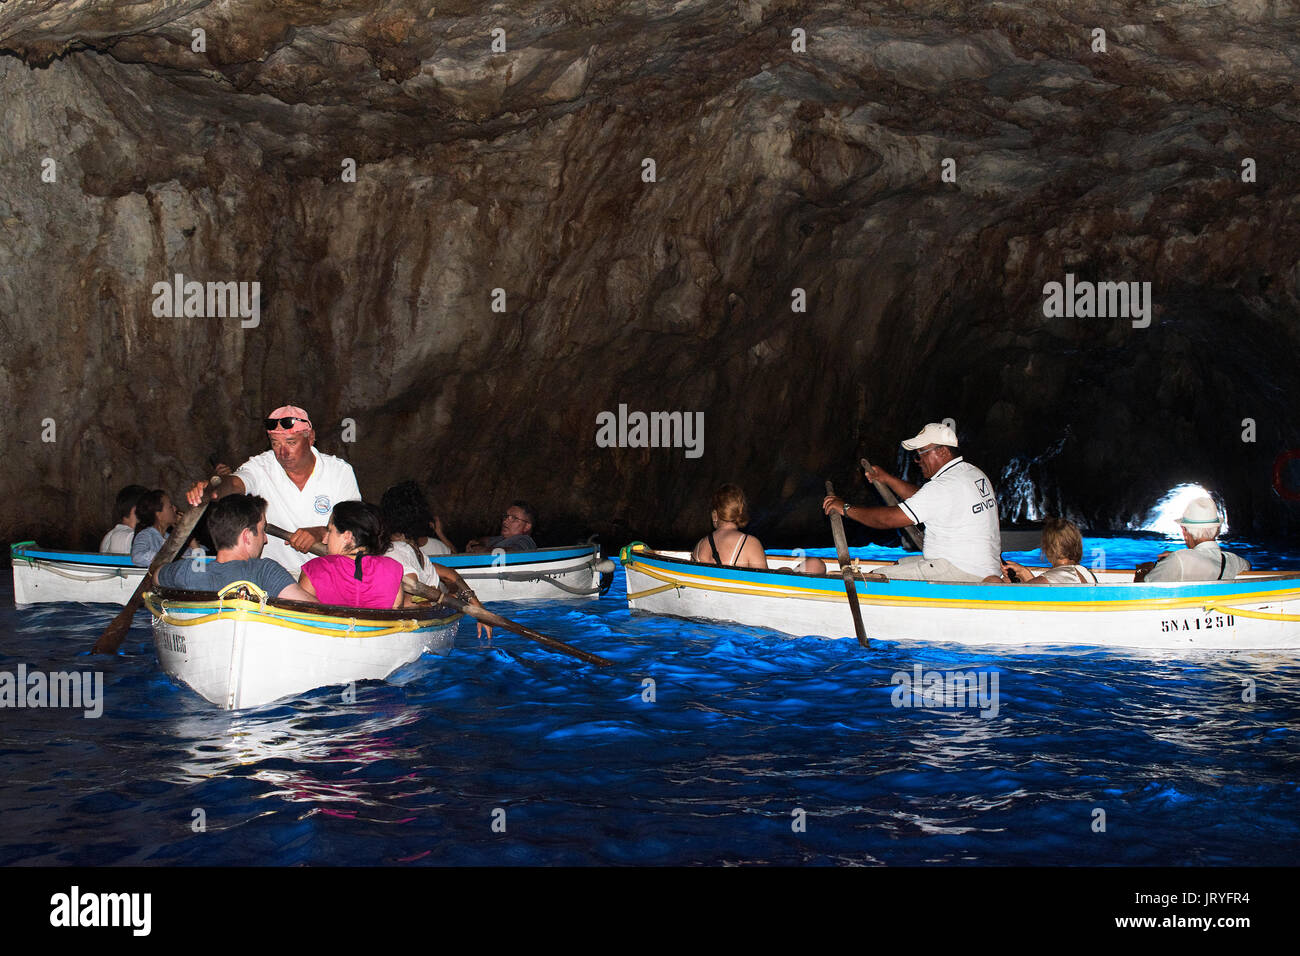 Les visiteurs à l'intérieur de la grotte bleue touristes gotta azzurra sur l'île de Capri, dans le golfe de Naples, Italie. Banque D'Images